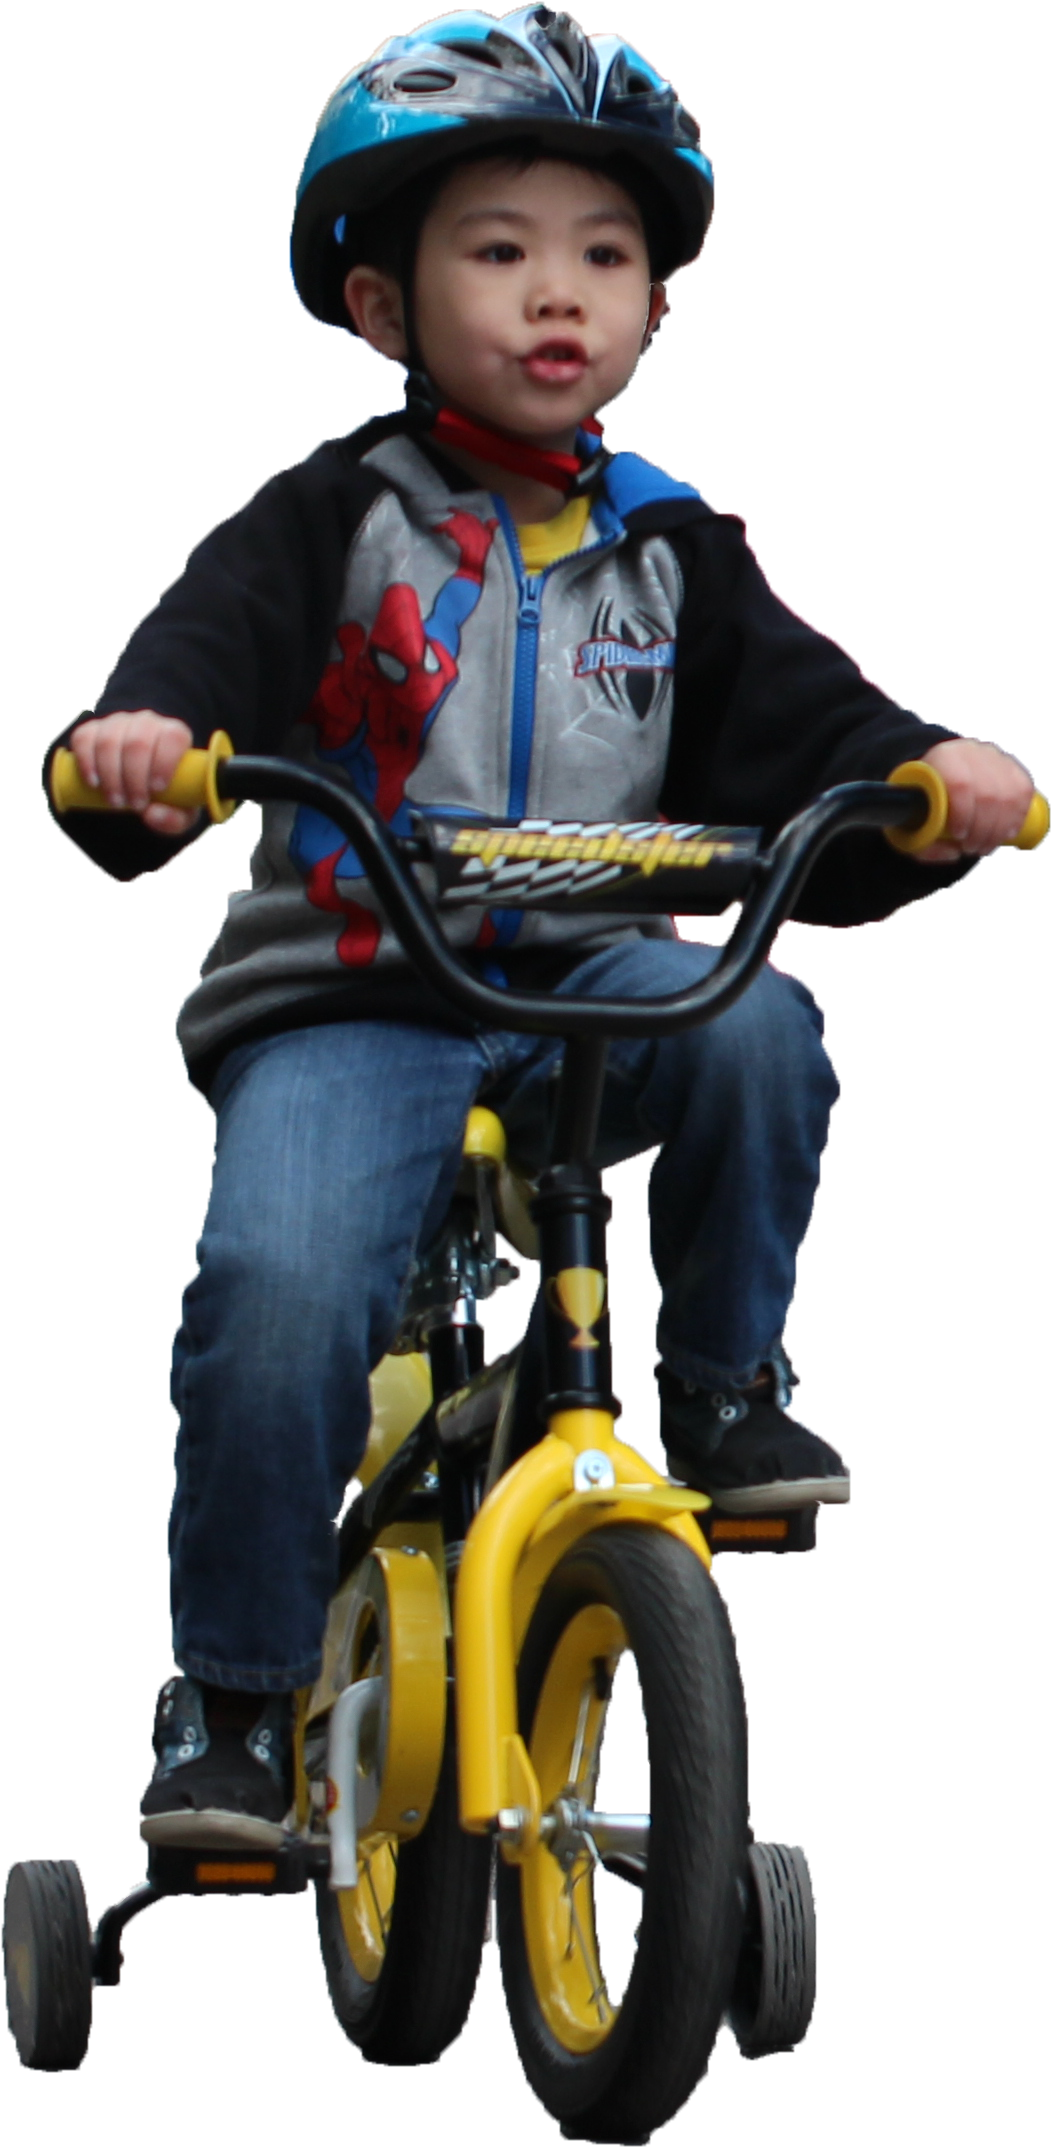 A Boy Riding A Bike